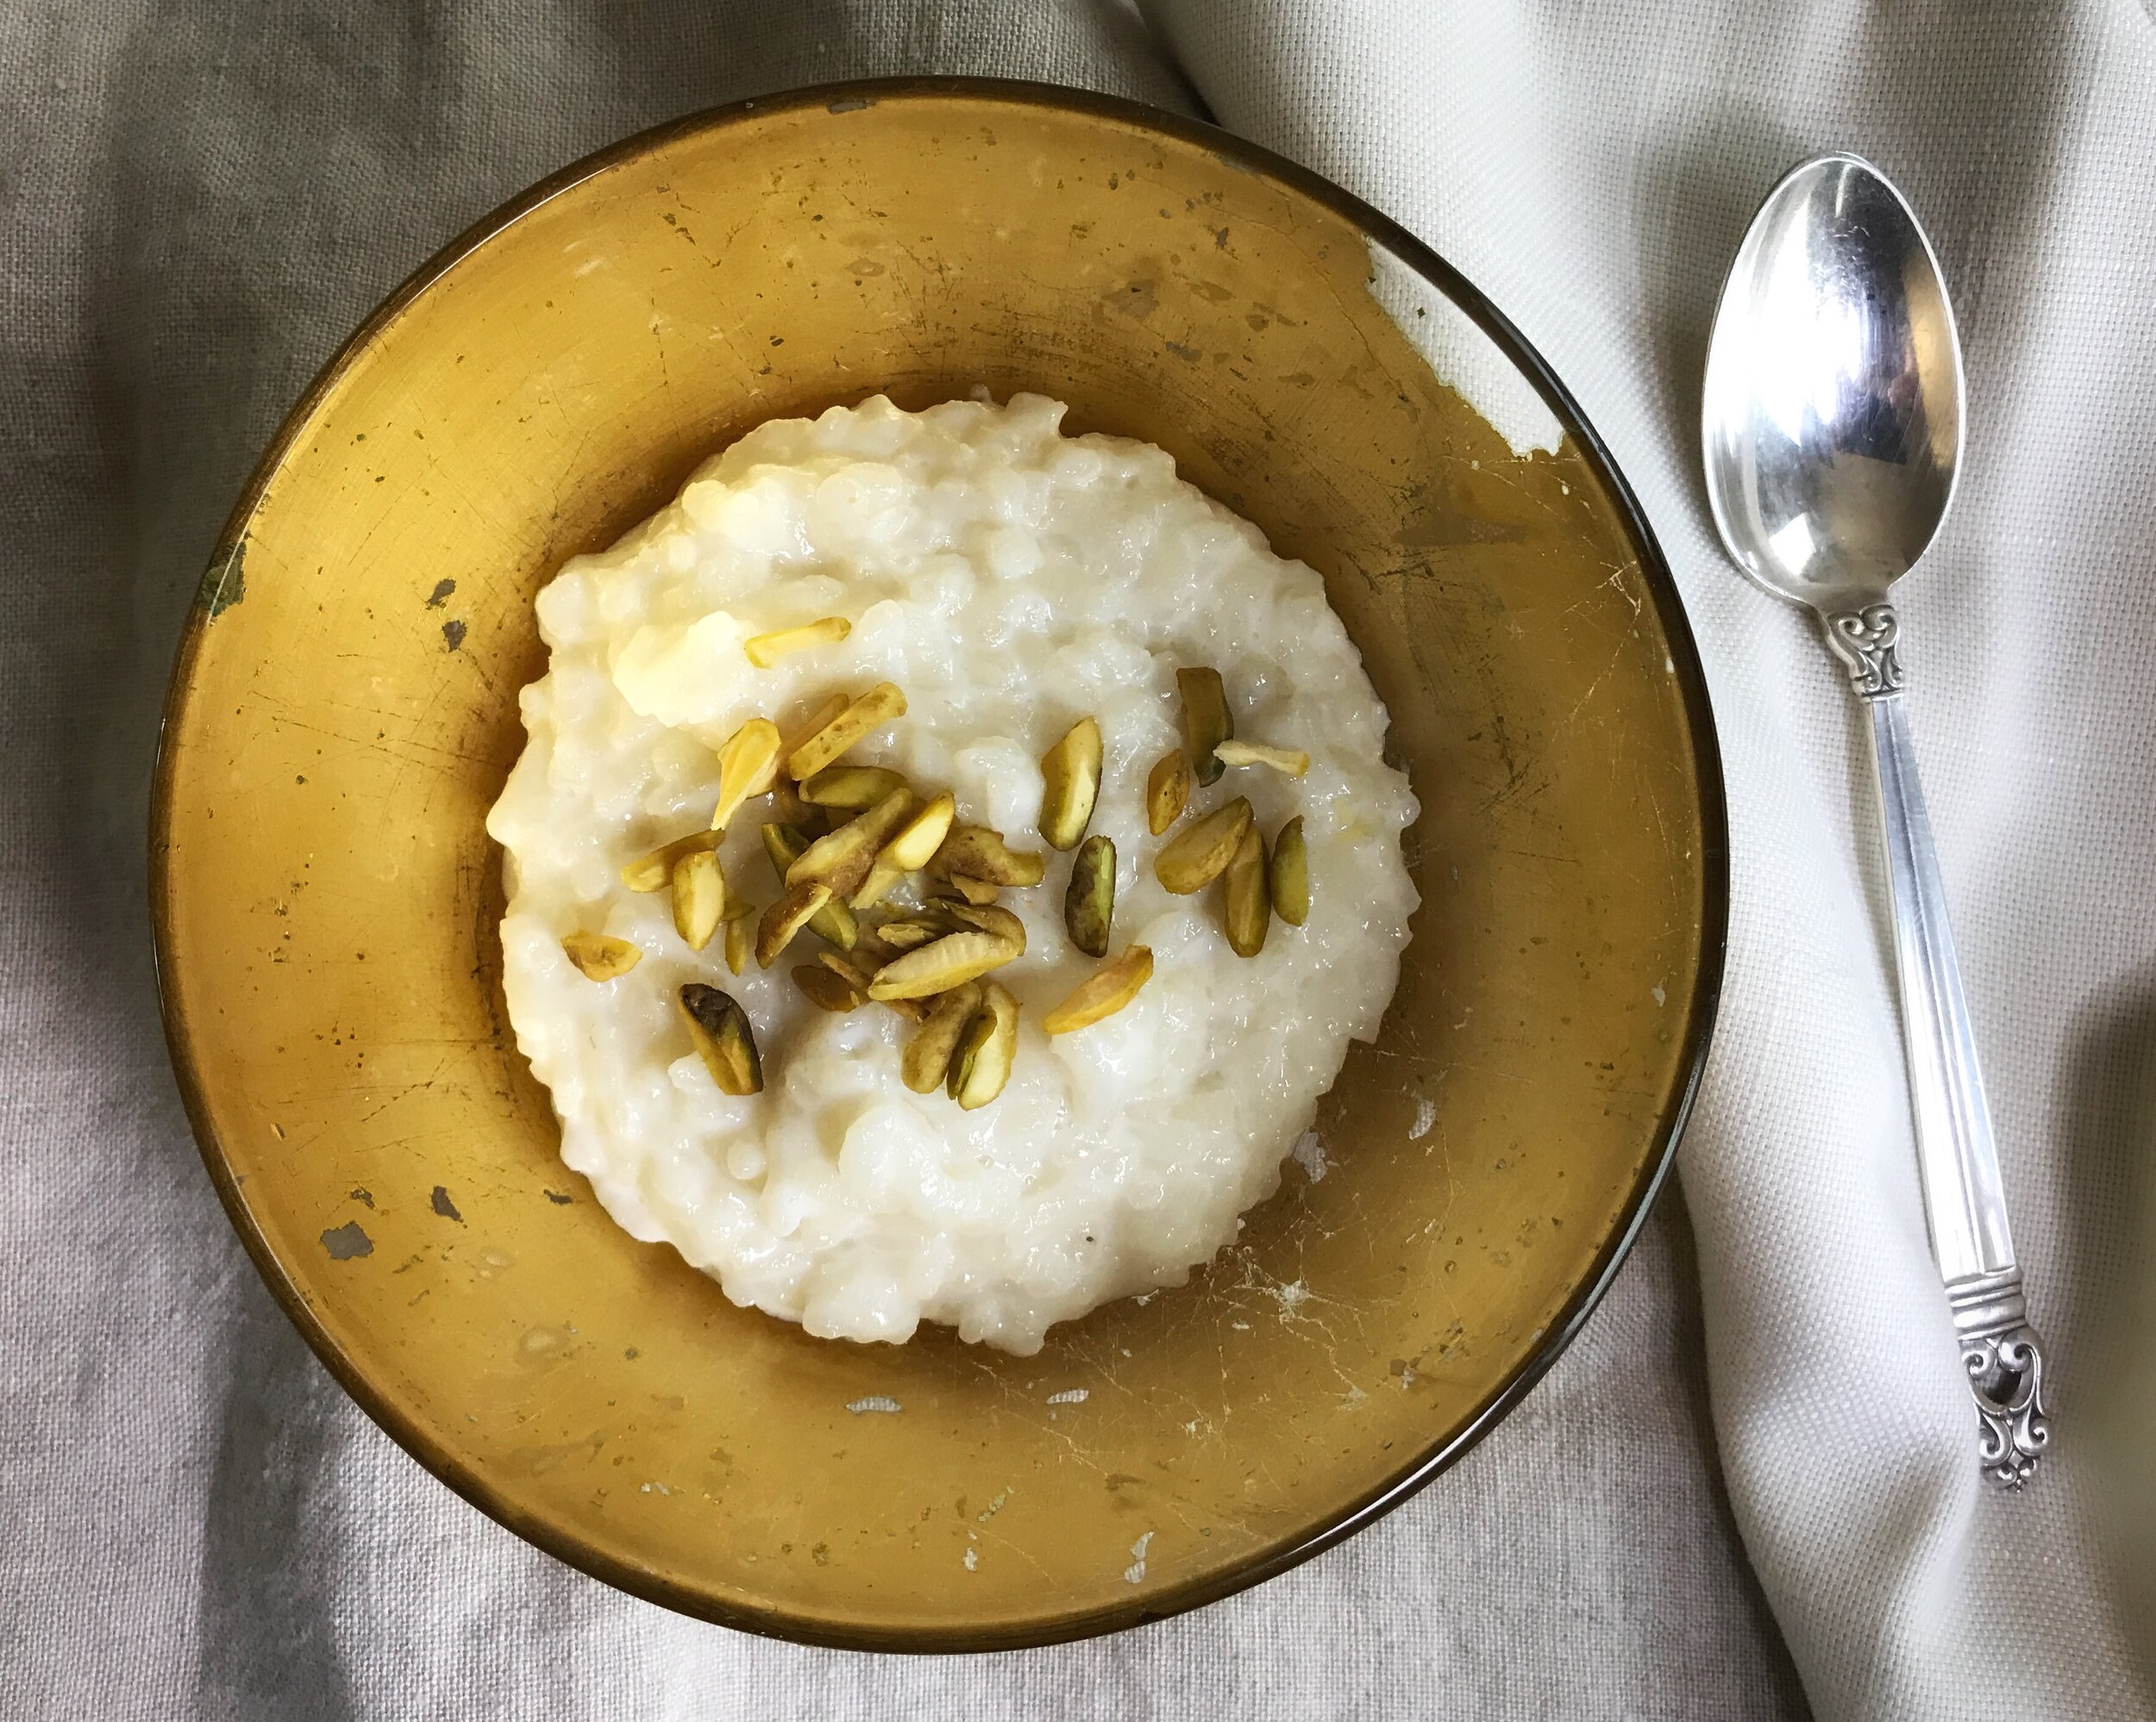 Syrian/Lebanese Rice Pudding